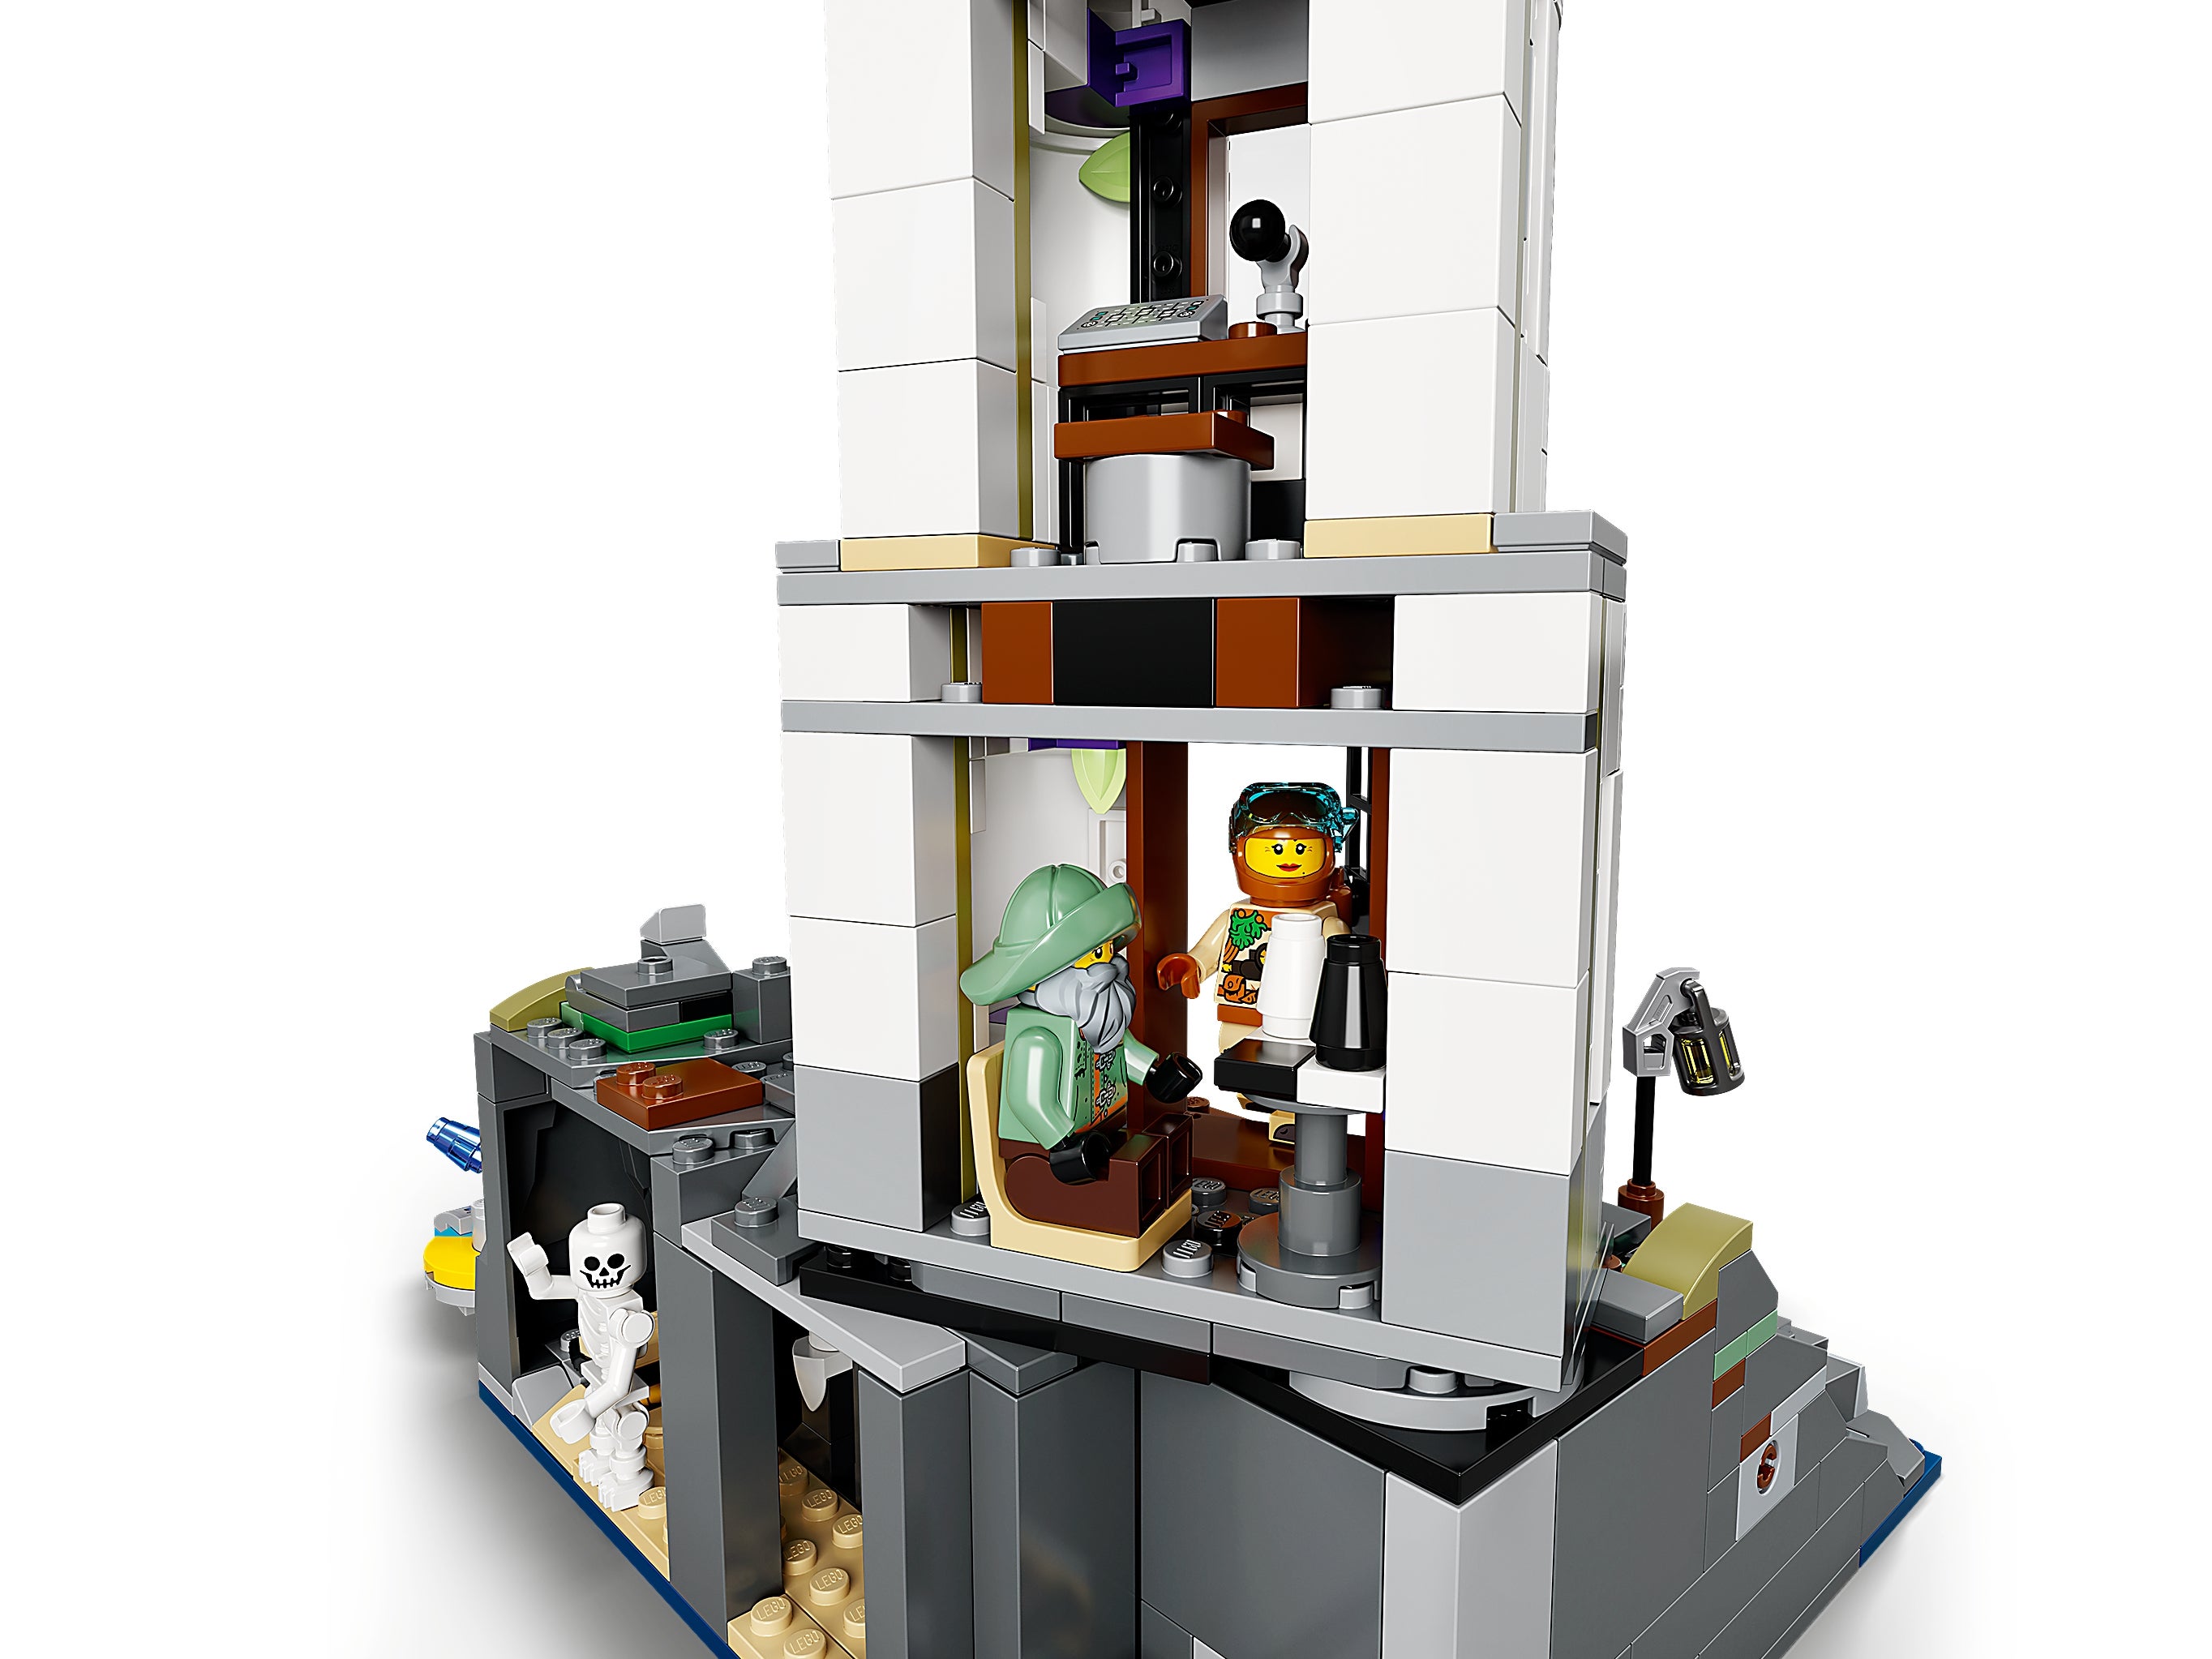 Конструктор LEGO Hidden Side «Маяк тьмы» 70431 / 540 деталей